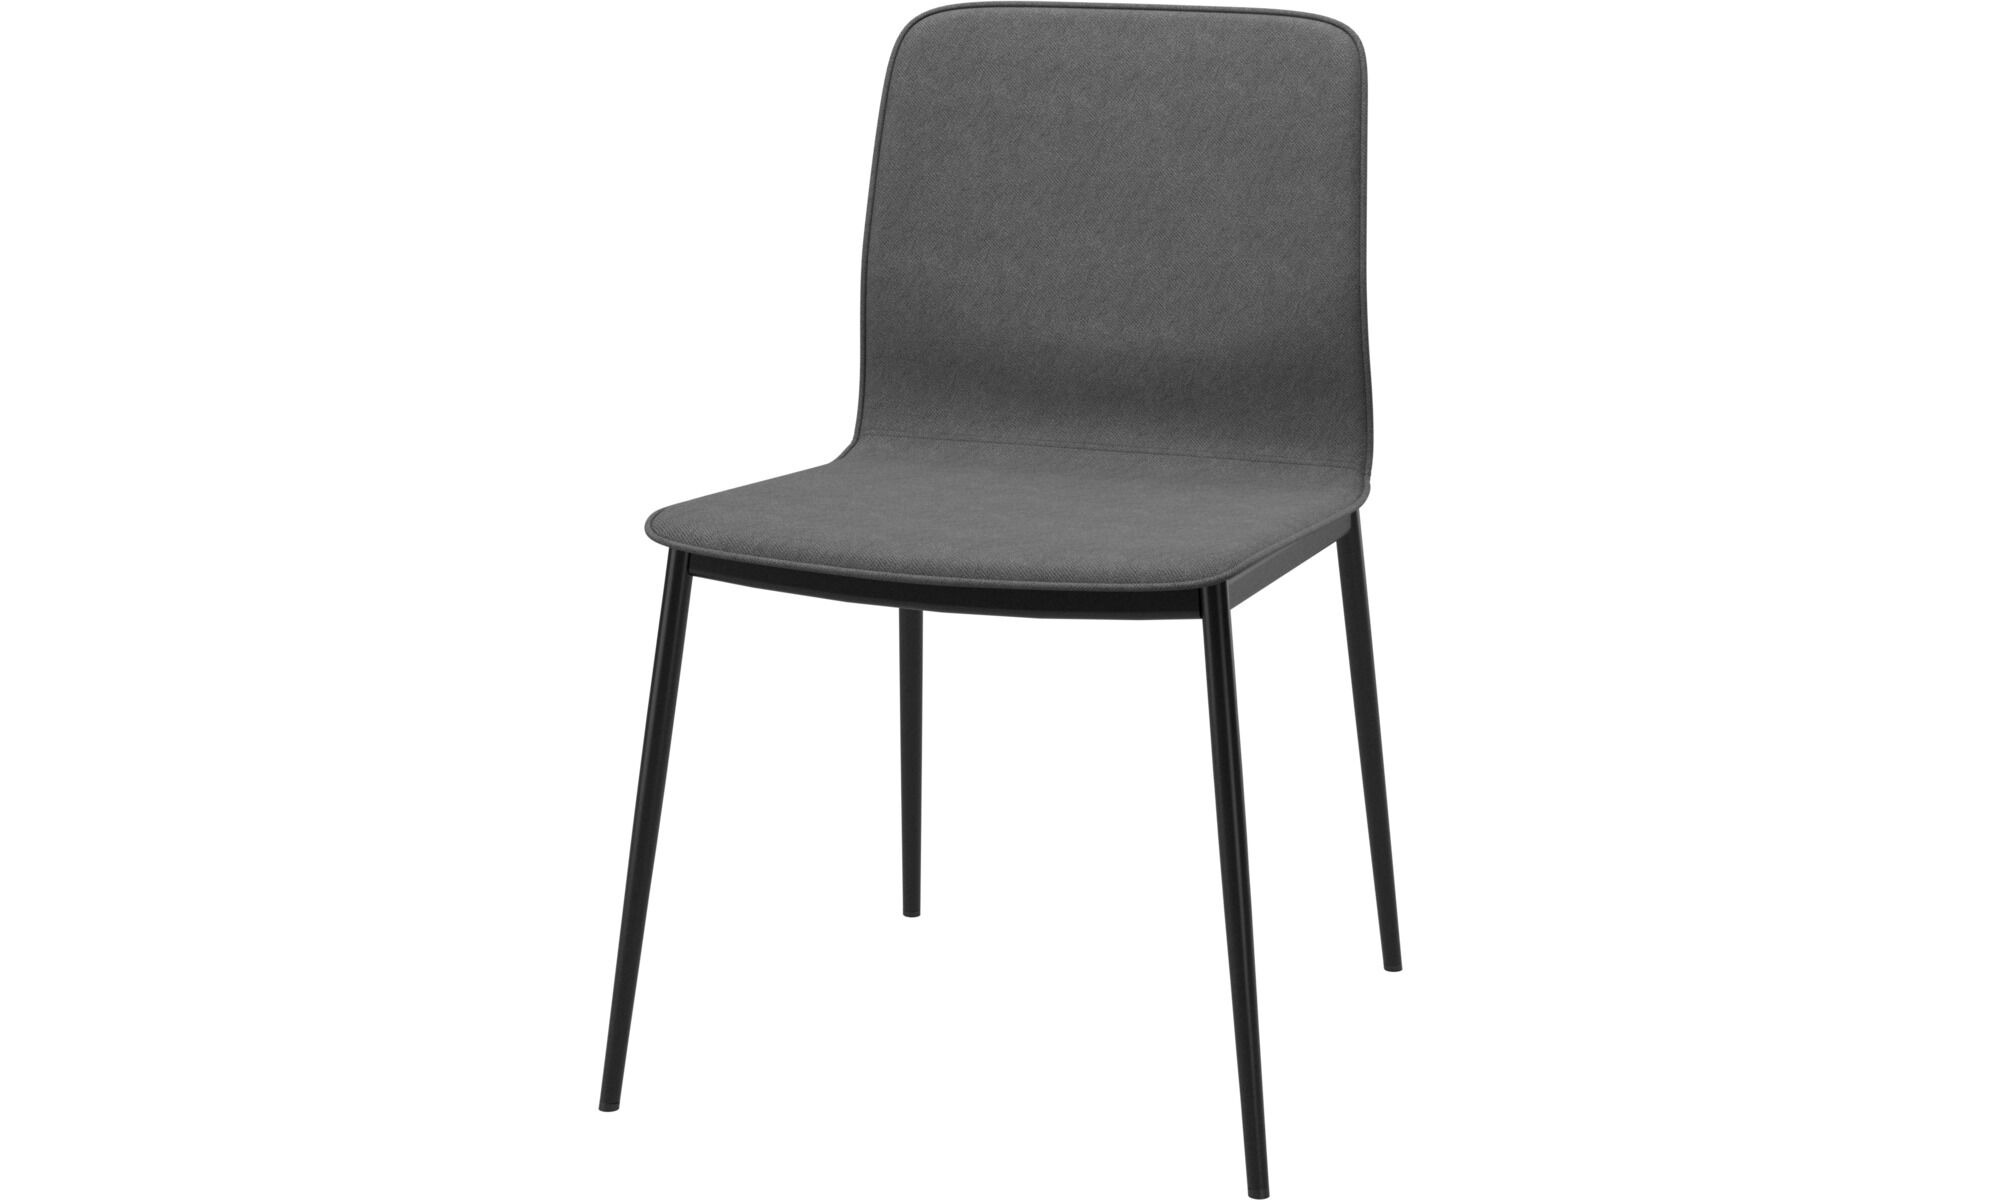 Обеденный стул Newport - Orlando 3082 Ткань темно-песочного цвета